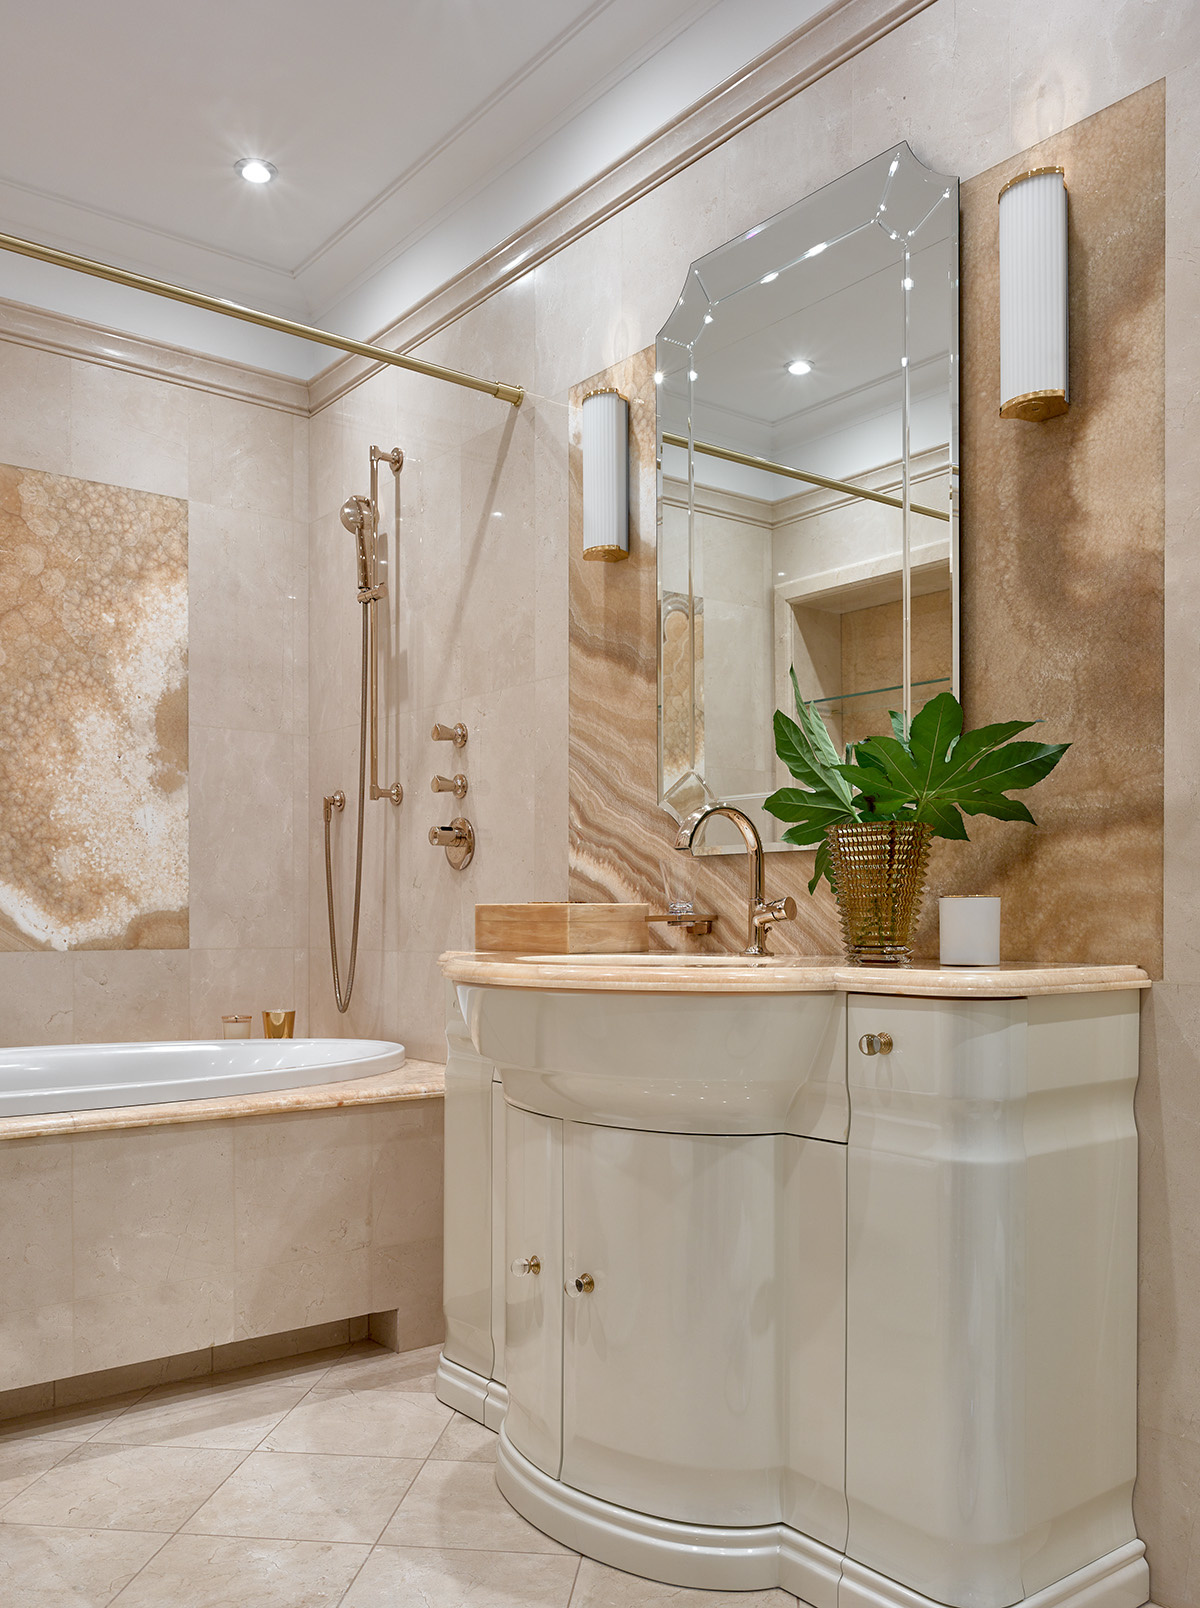 Khu vực tường, sàn và gạch ốp bồn tắm màu hồng phấn khi kết hợp với sắc nâu trầm ấm và những chi tiết kim loại mạ vàng đồng càng tăng thêm phần sang trọng.